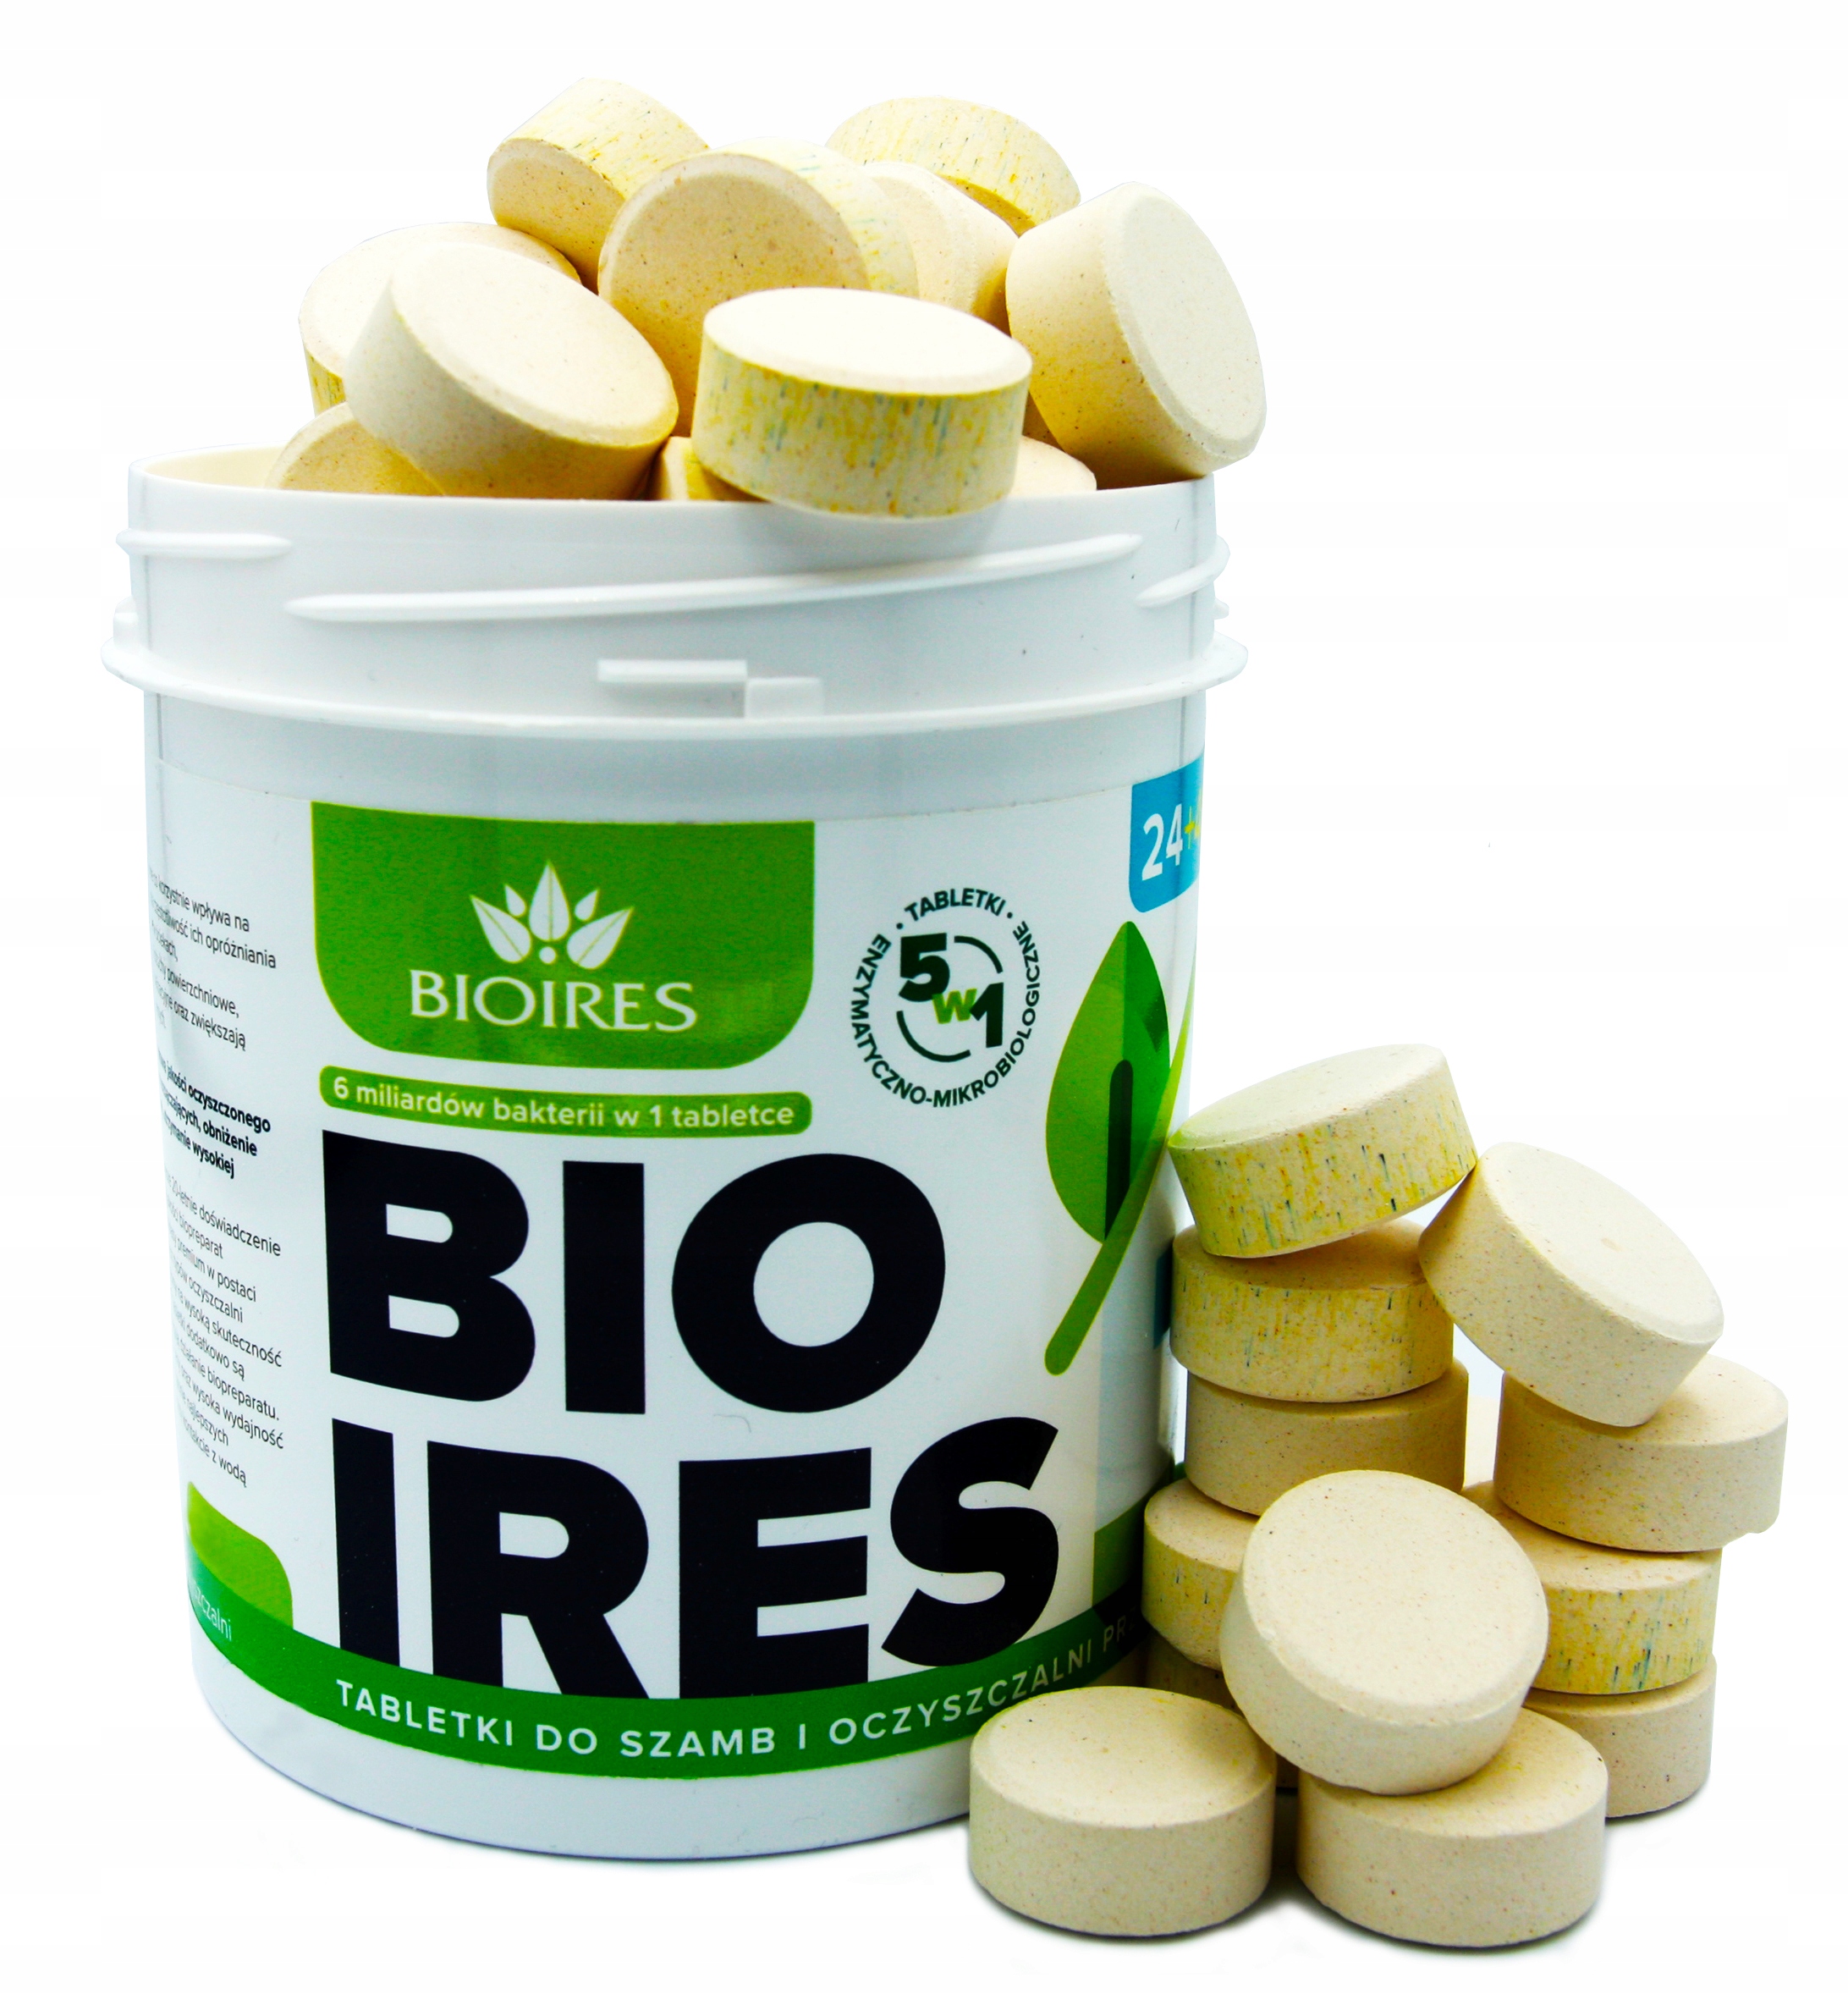 Promocja Tabletki do szamba Bioires na Rok + Tłuszcze 5w1 wyprzedaż przecena